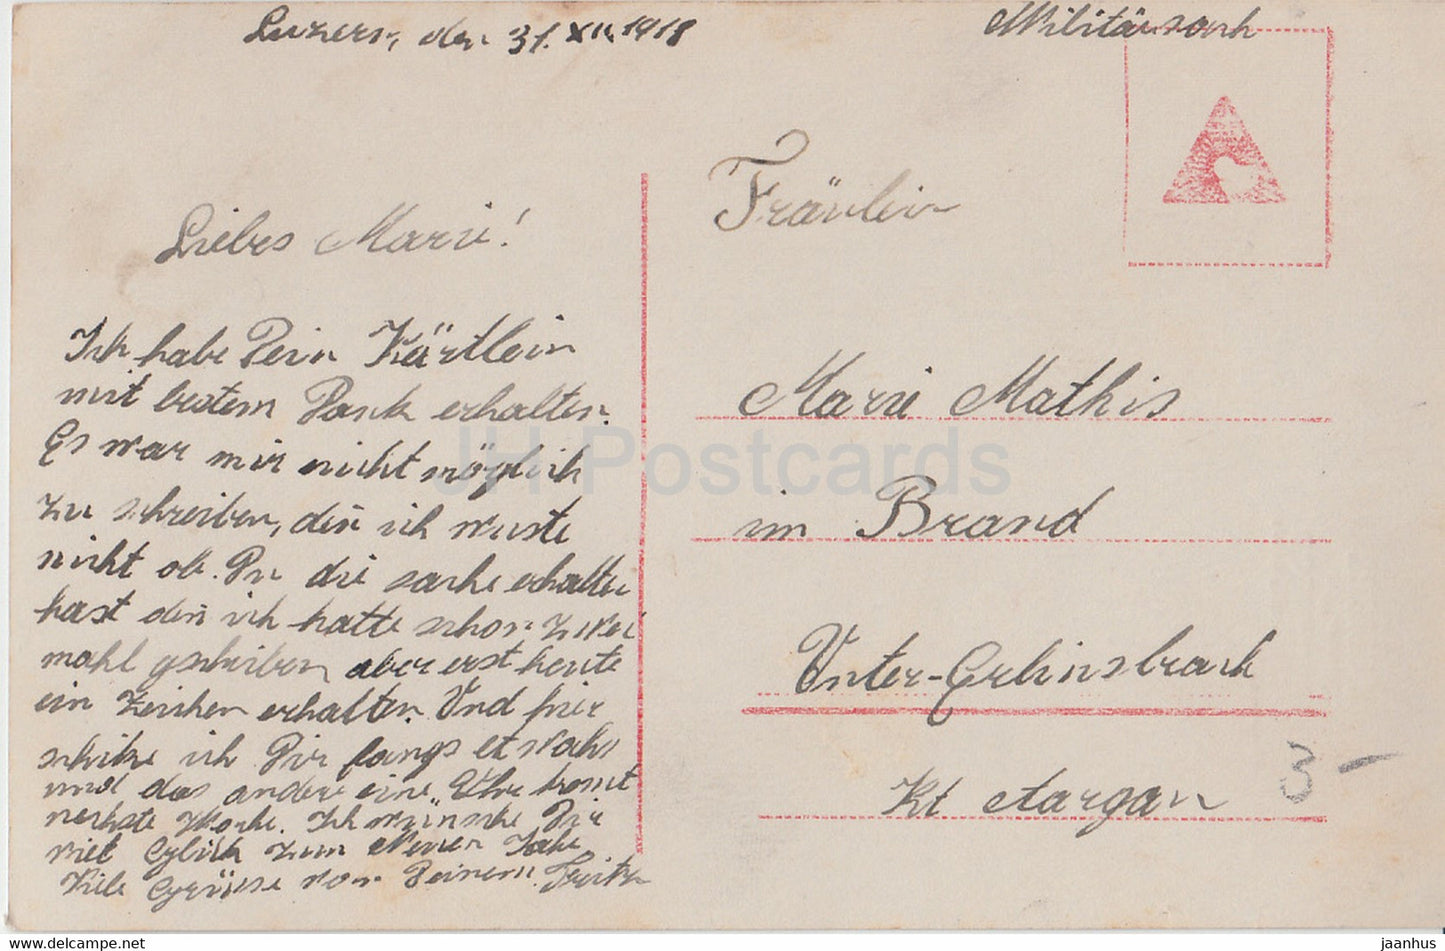 Neujahrsgrußkarte - Die besten Neujahrsgrusse - Paar - Amag 61958/3 - alte Postkarte - 1918 - Deutschland - gebraucht